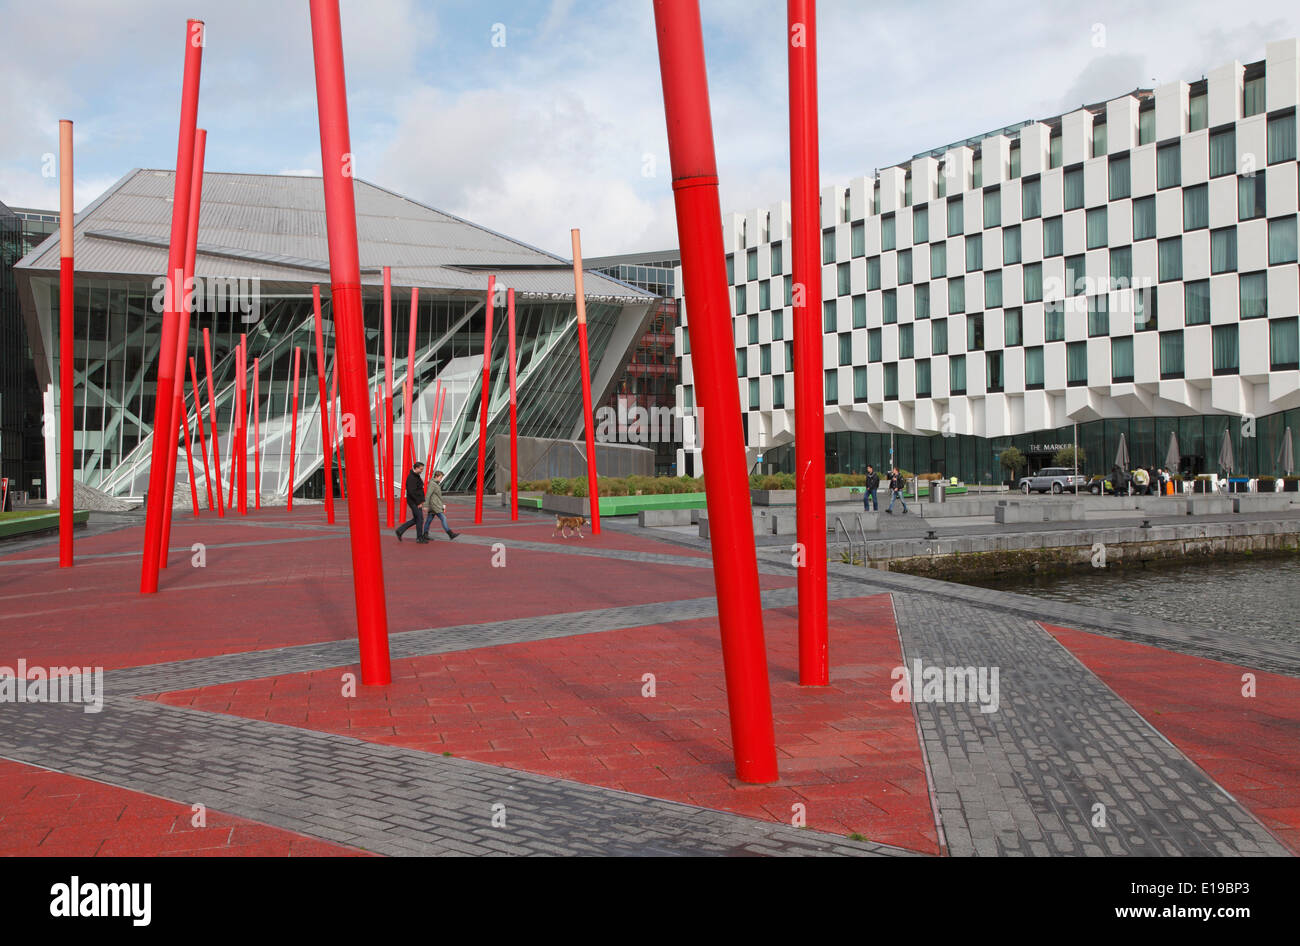 Irlanda, Dublino, Bord Gais Energy Theatre, Daniel Libeskind architetto, Foto Stock